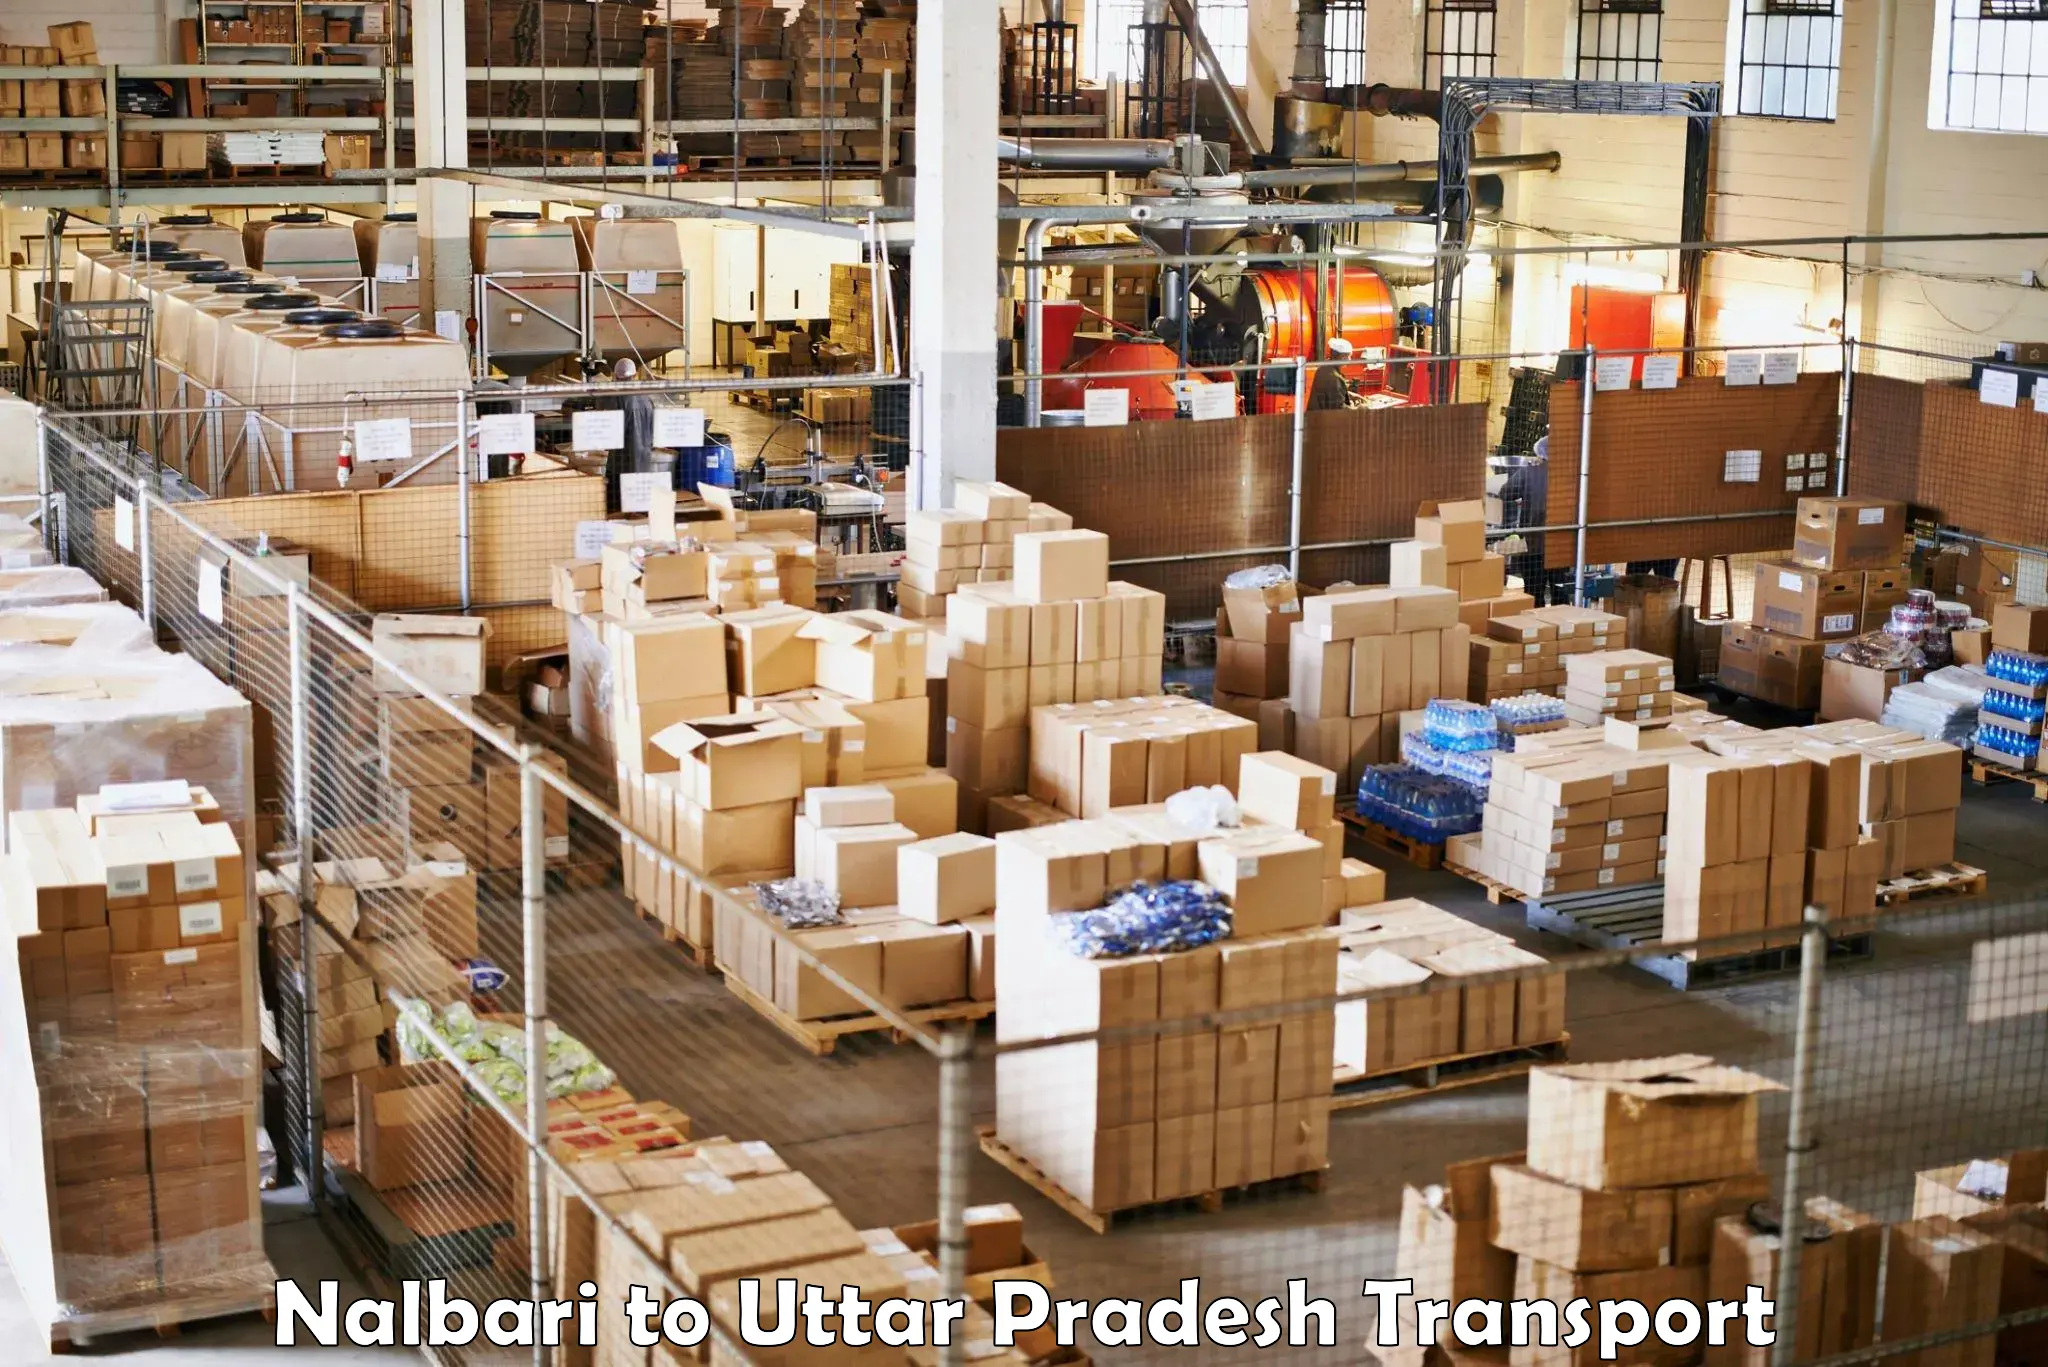 Online transport service Nalbari to Thakurdwara